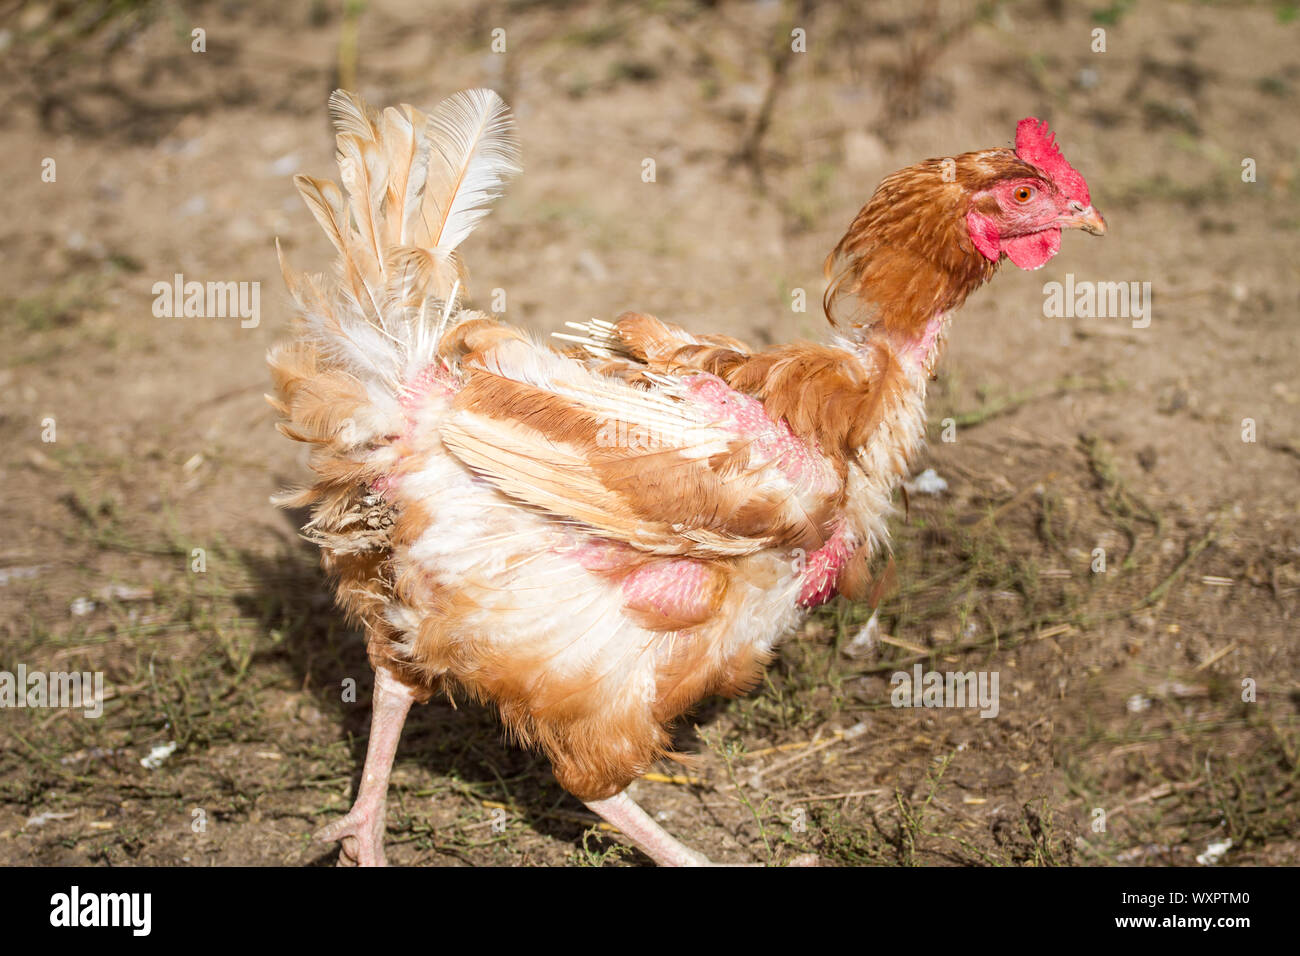 Brown plucked chicken hen Stock Photo